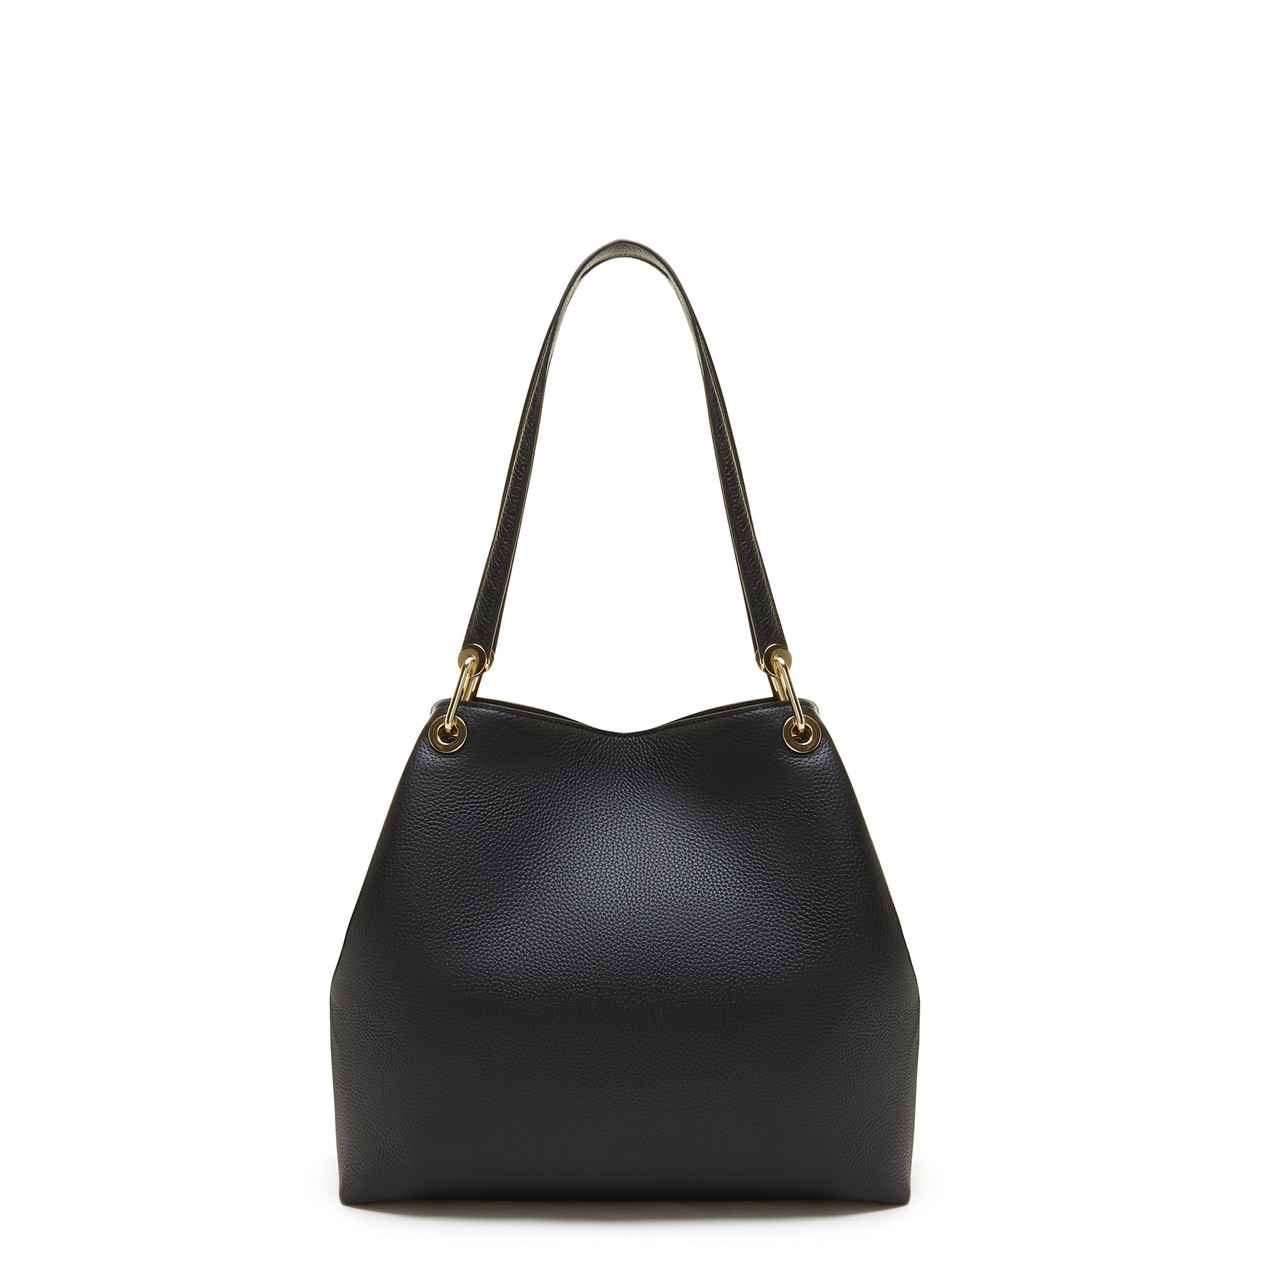 Femme Forte Annabelle black calfskin leather shoulder bag